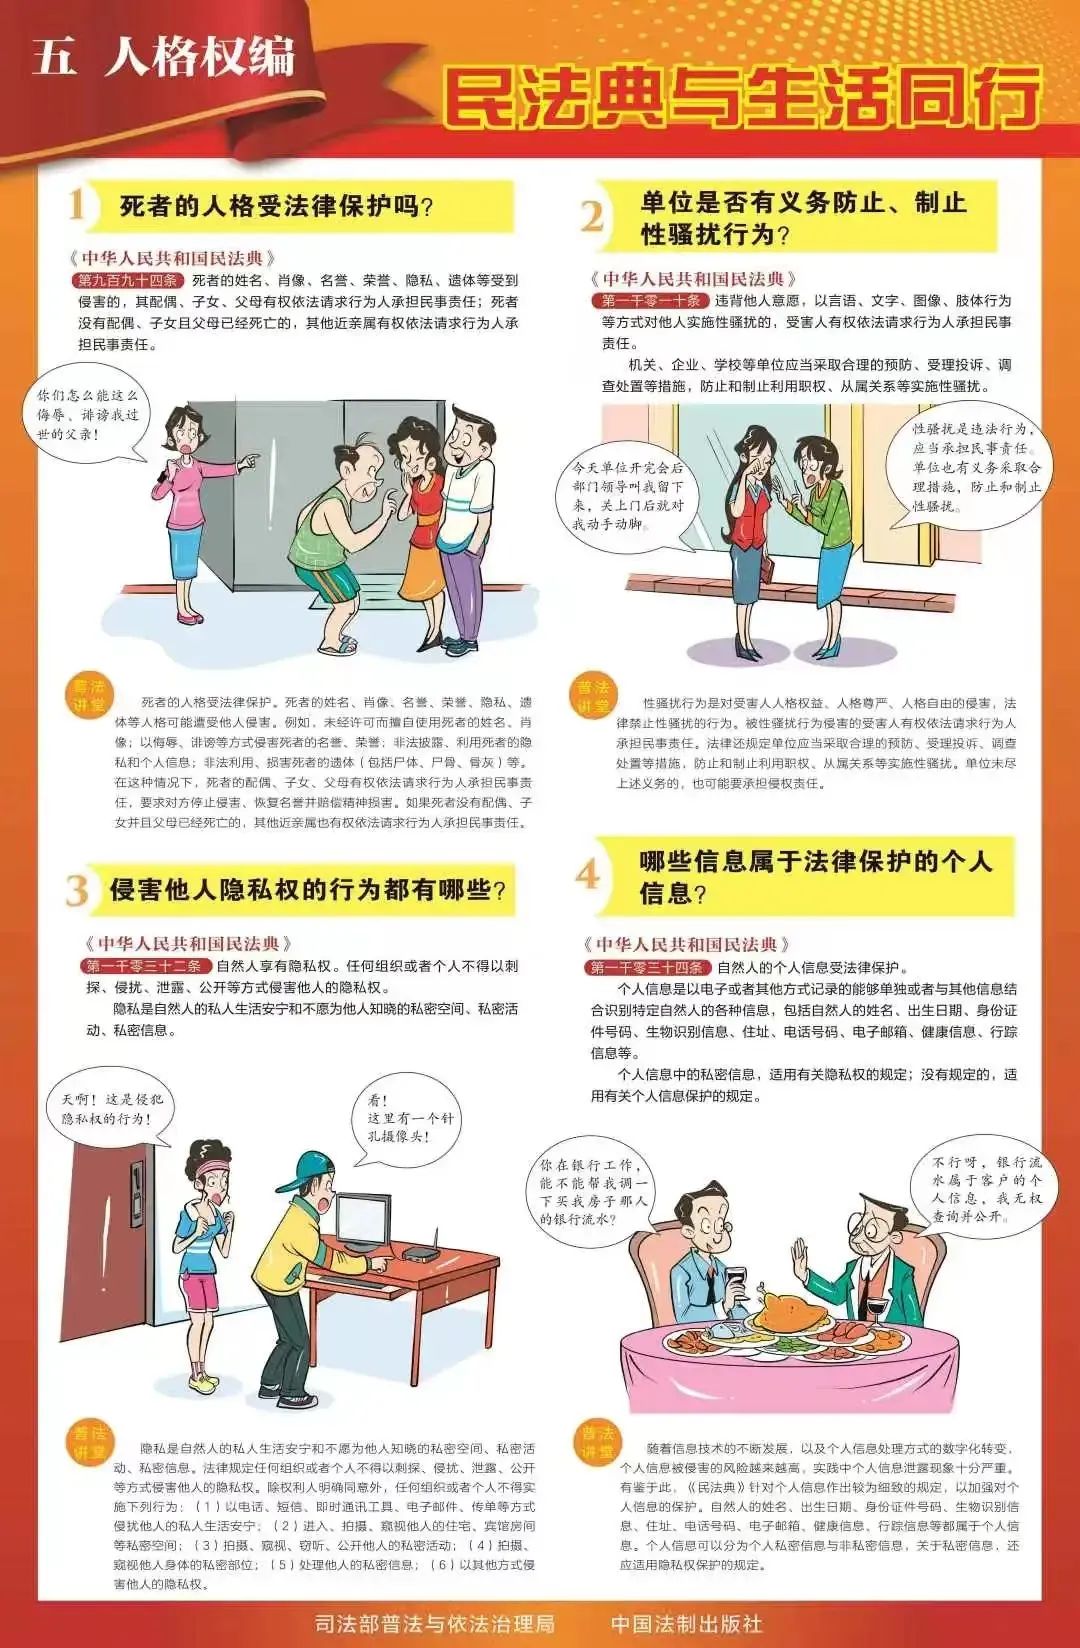 民法典学习宣传丨九张挂图带您速览民法典(图6)